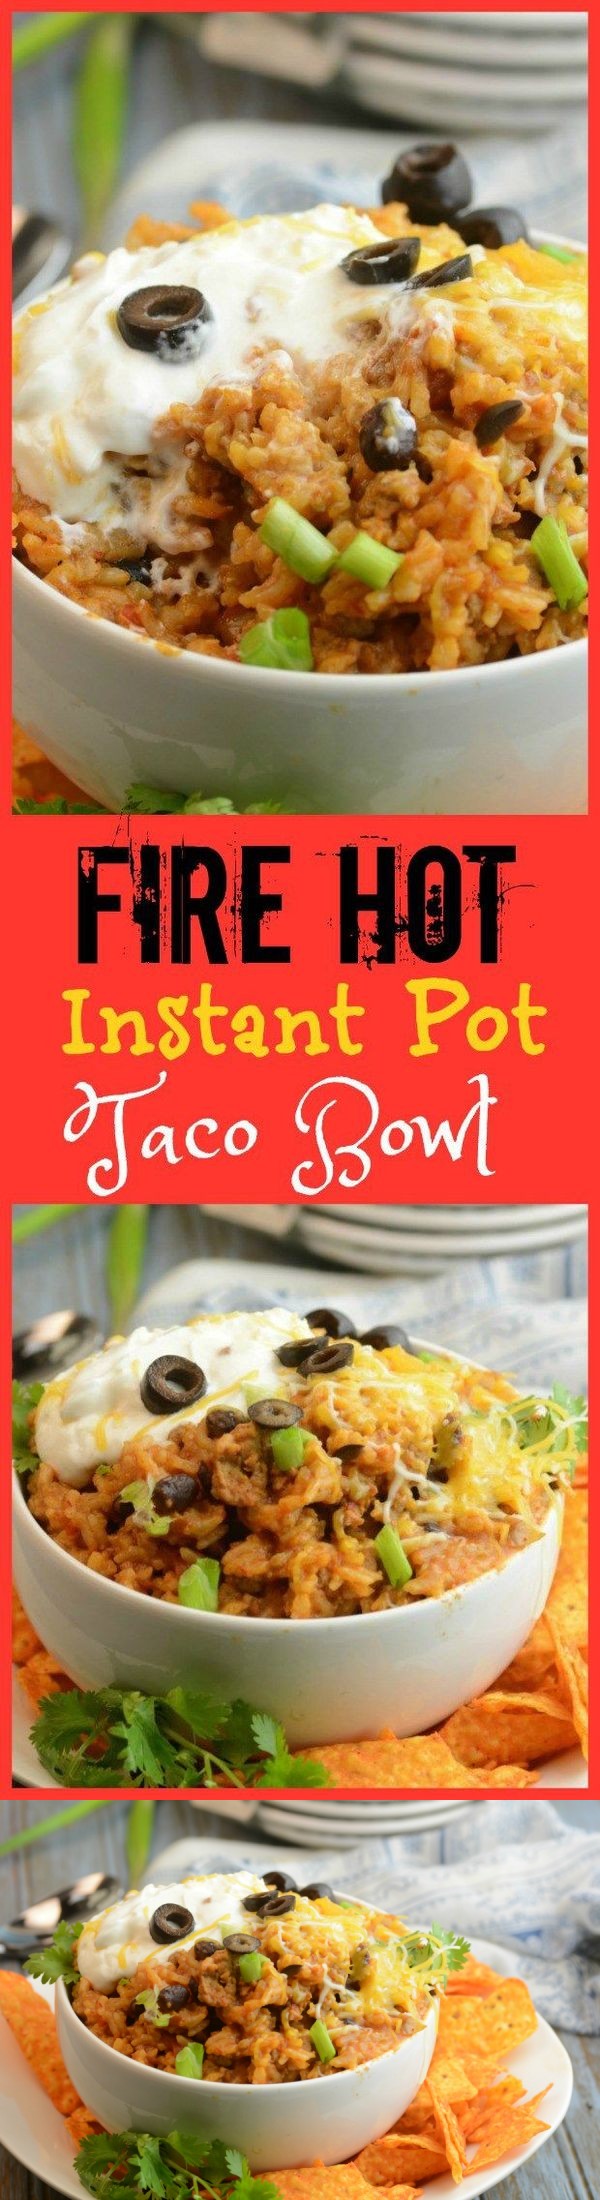 Fire Hot Instant Pot Taco Bowl